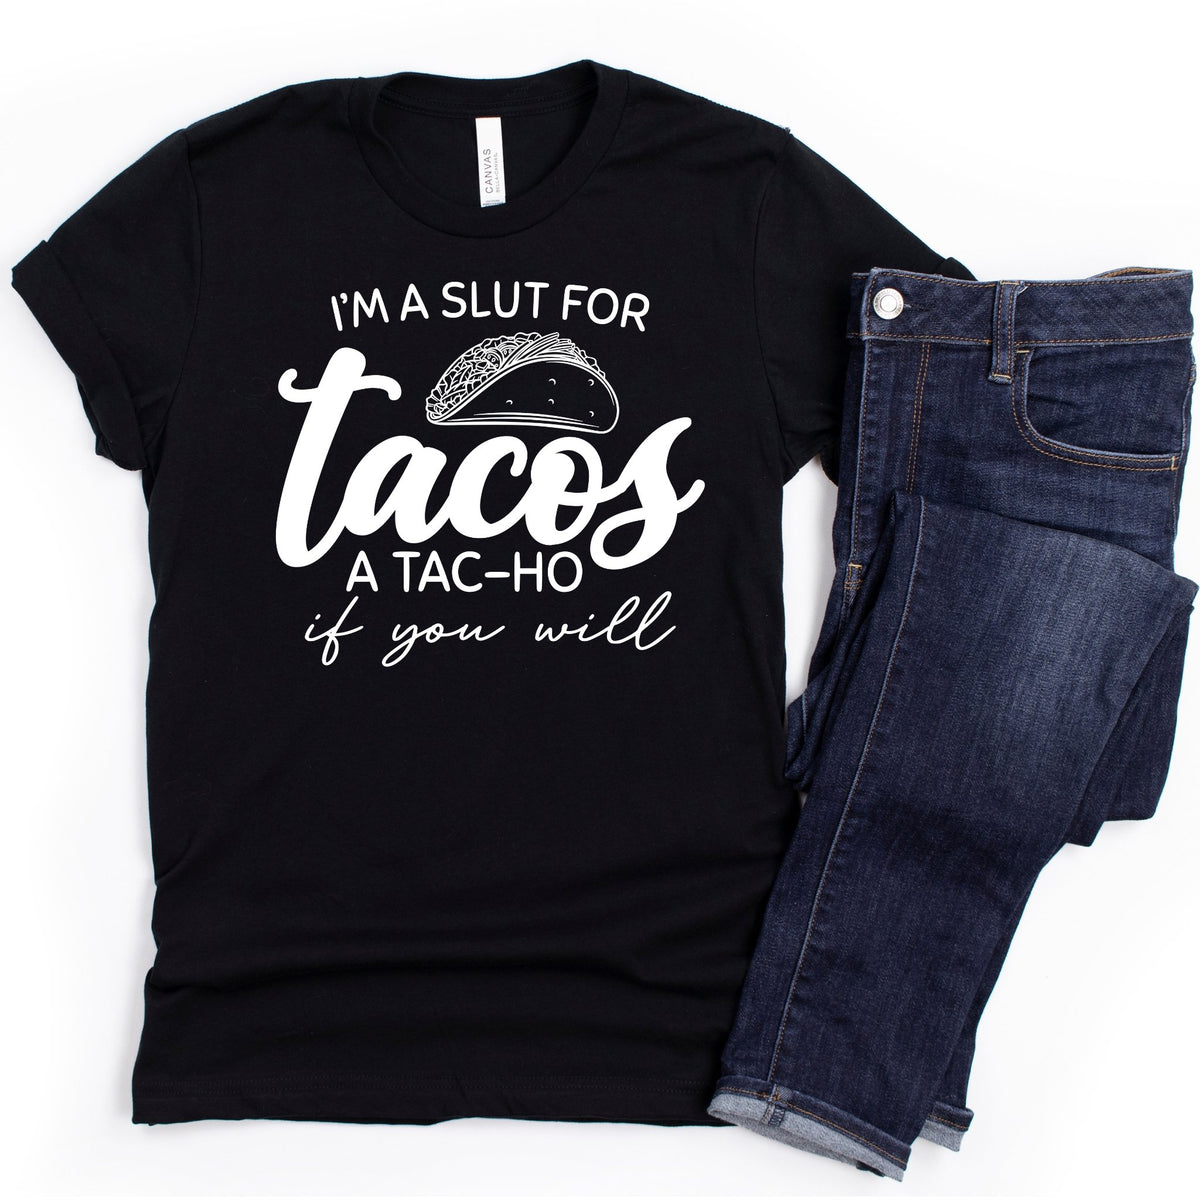 I'm A Slut For Tacos A Tac-Ho If You Will - Nola Charm